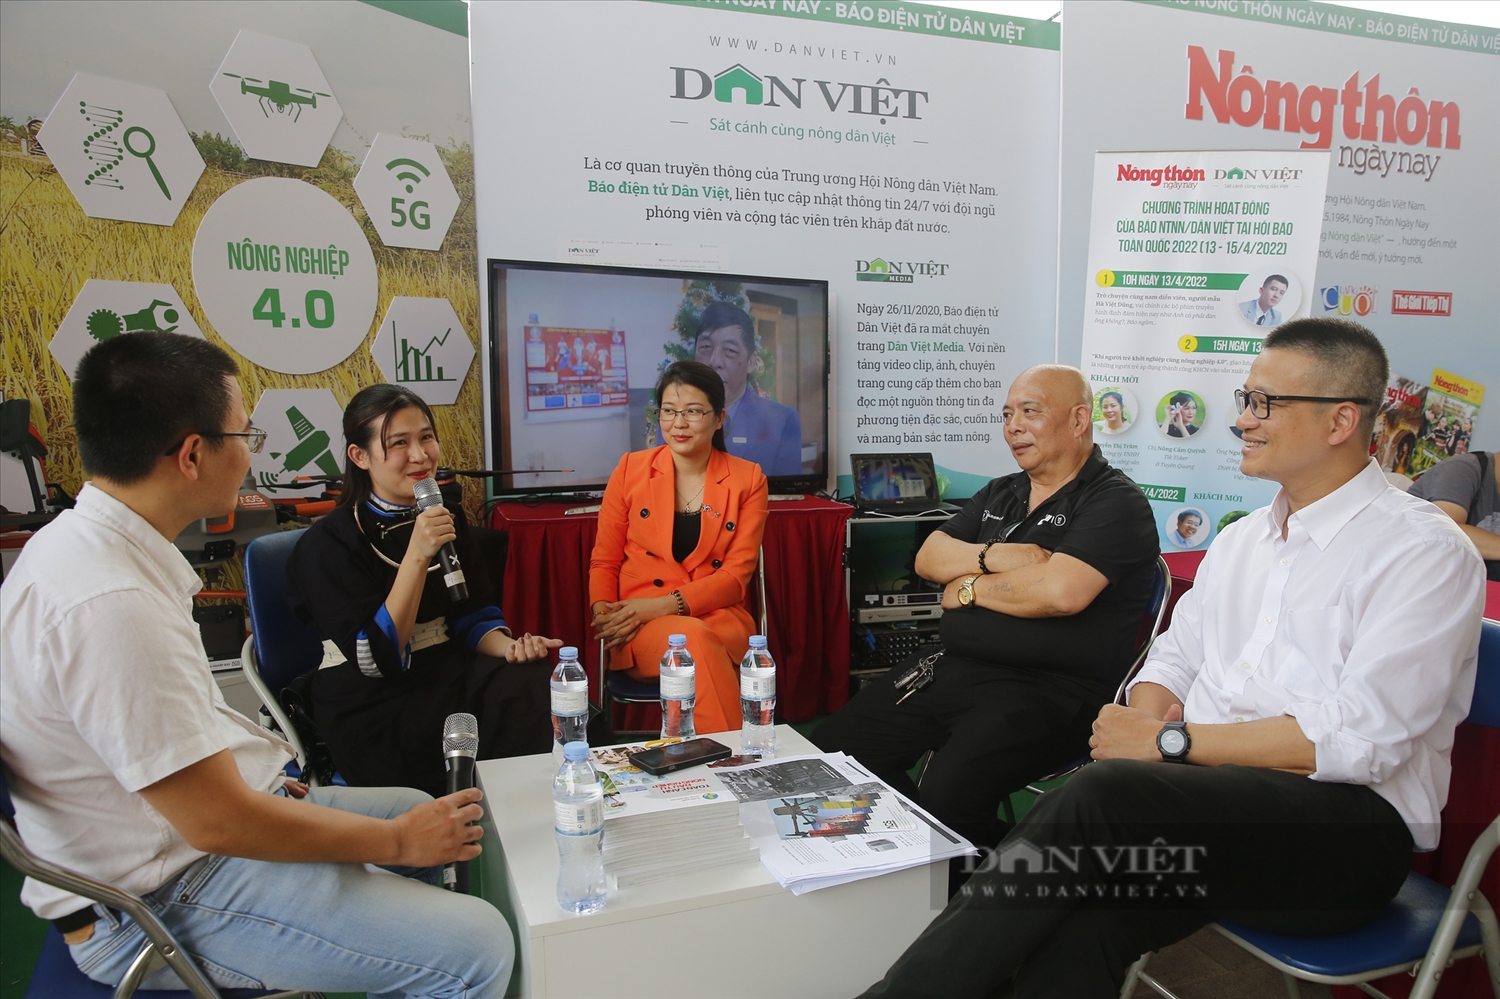 Hot Tiktoker Nông Cẩm Quỳnh chia sẻ tại chương trình "Khi người trẻ khởi nghiệp cùng nông nghiệp 4.0" do Báo điện tử Danviet.vn tổ chức